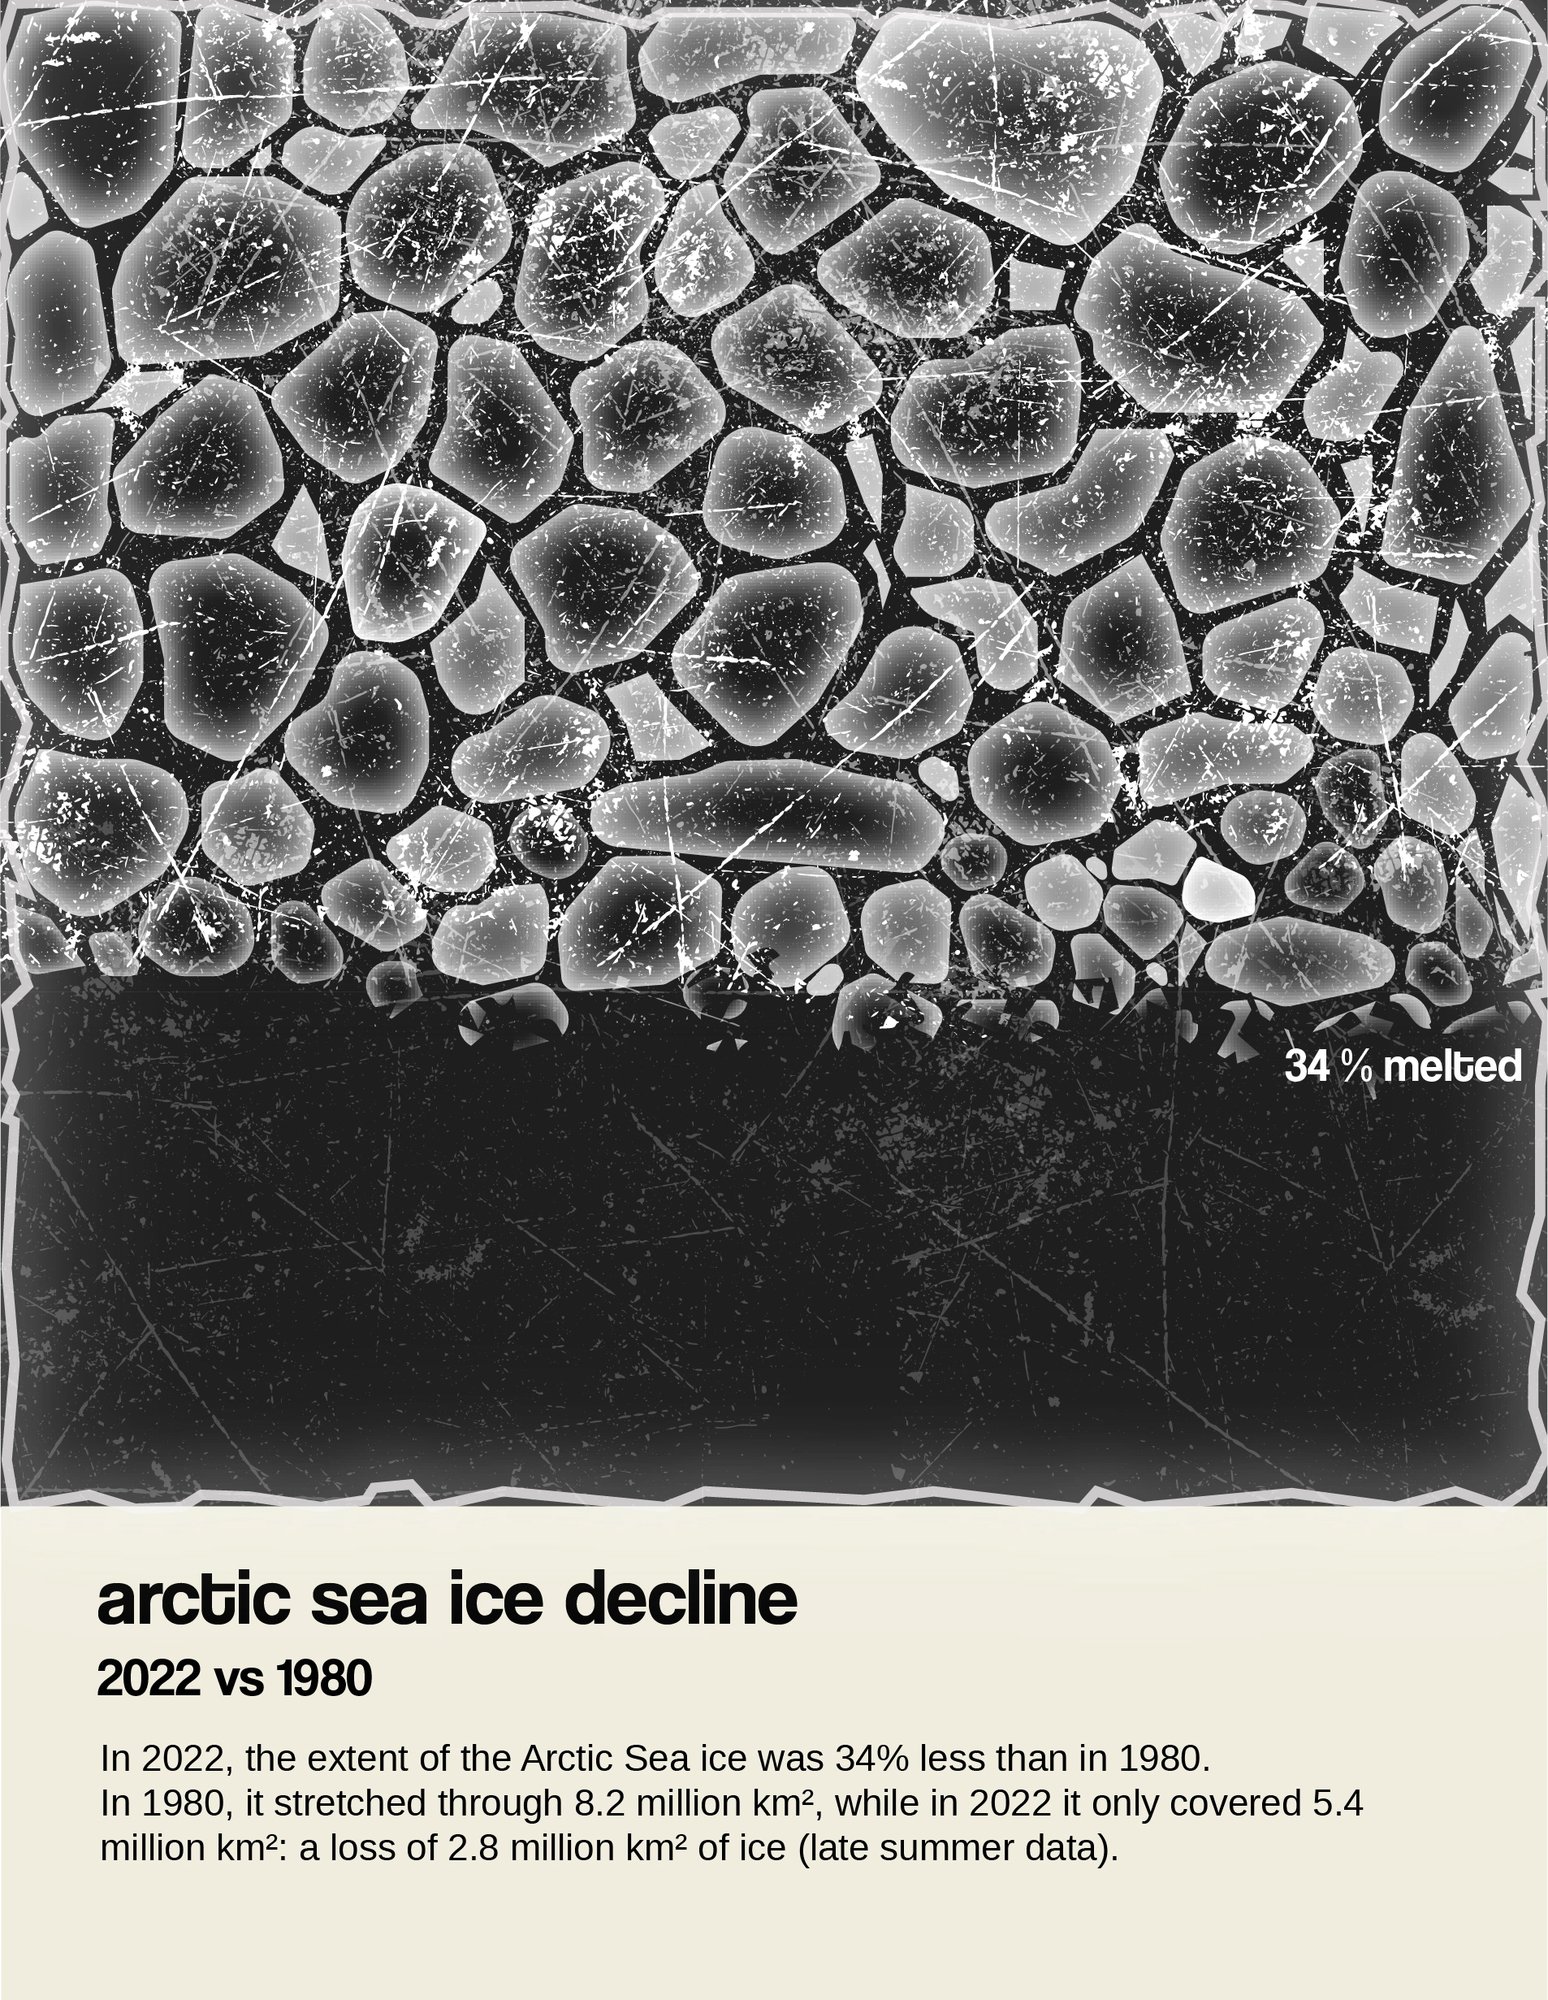 Arctic Sea Ice Decline 2022 vs 1980 - a Little Picture by Silvia Romanelli